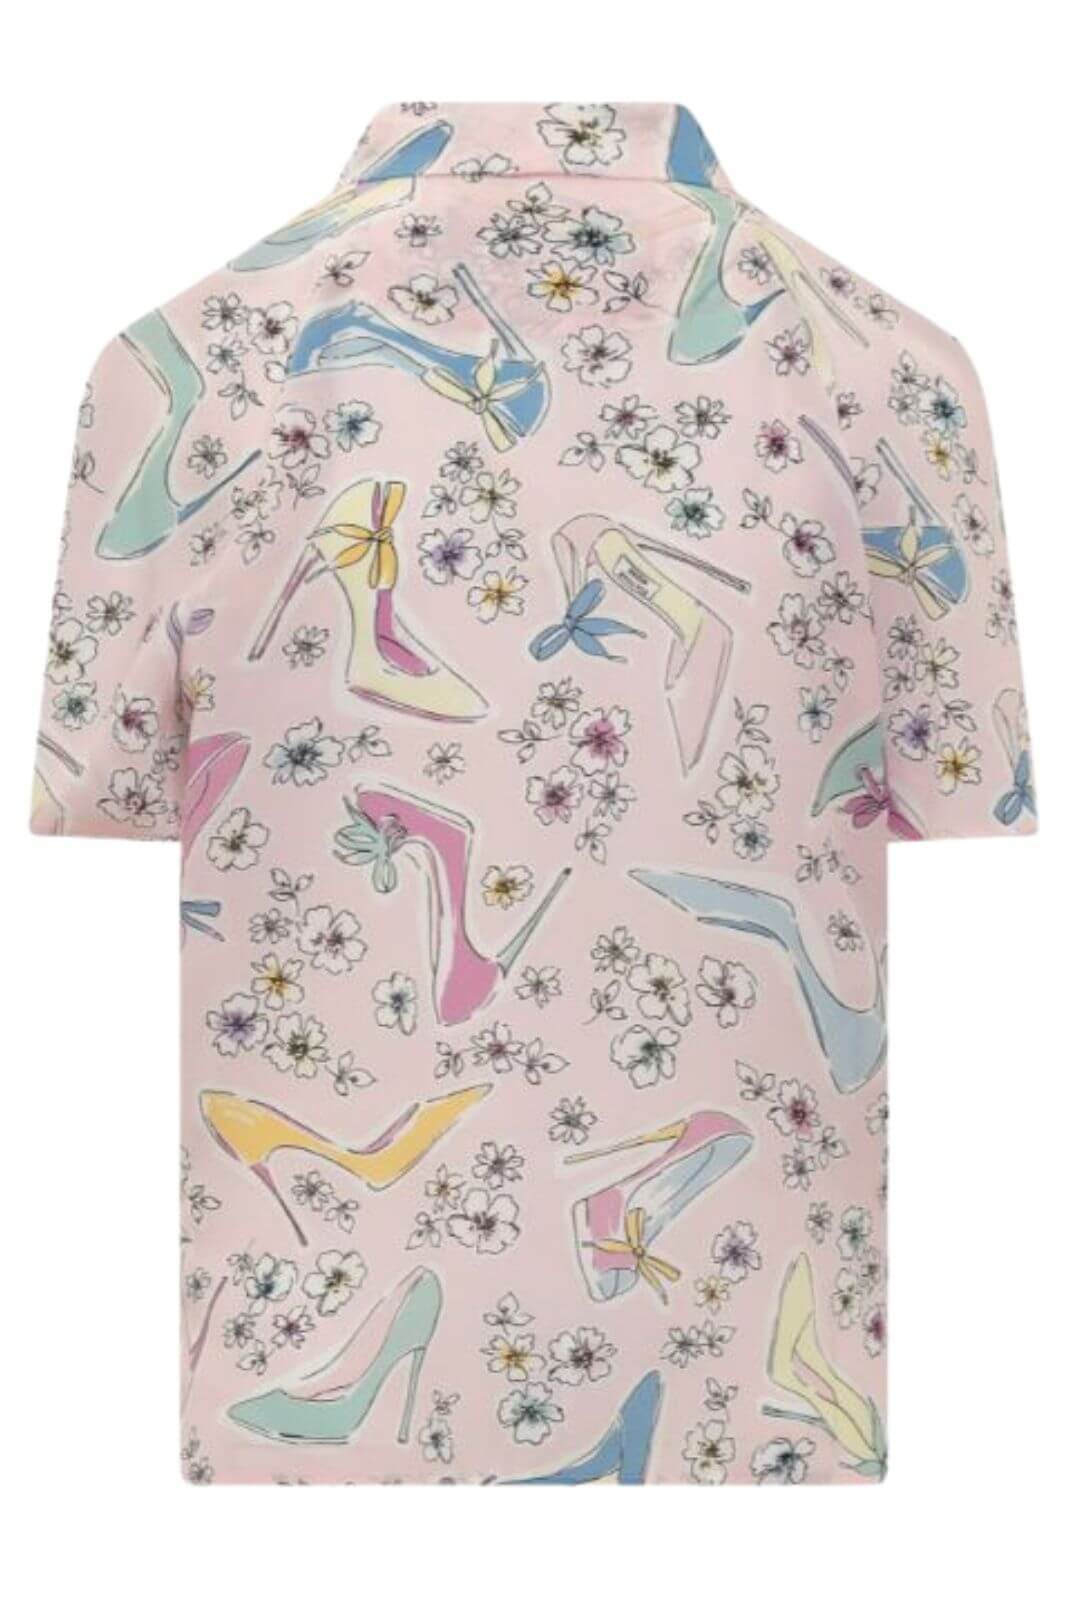 Moschino Boutique Camicia Donna in seta con nodo